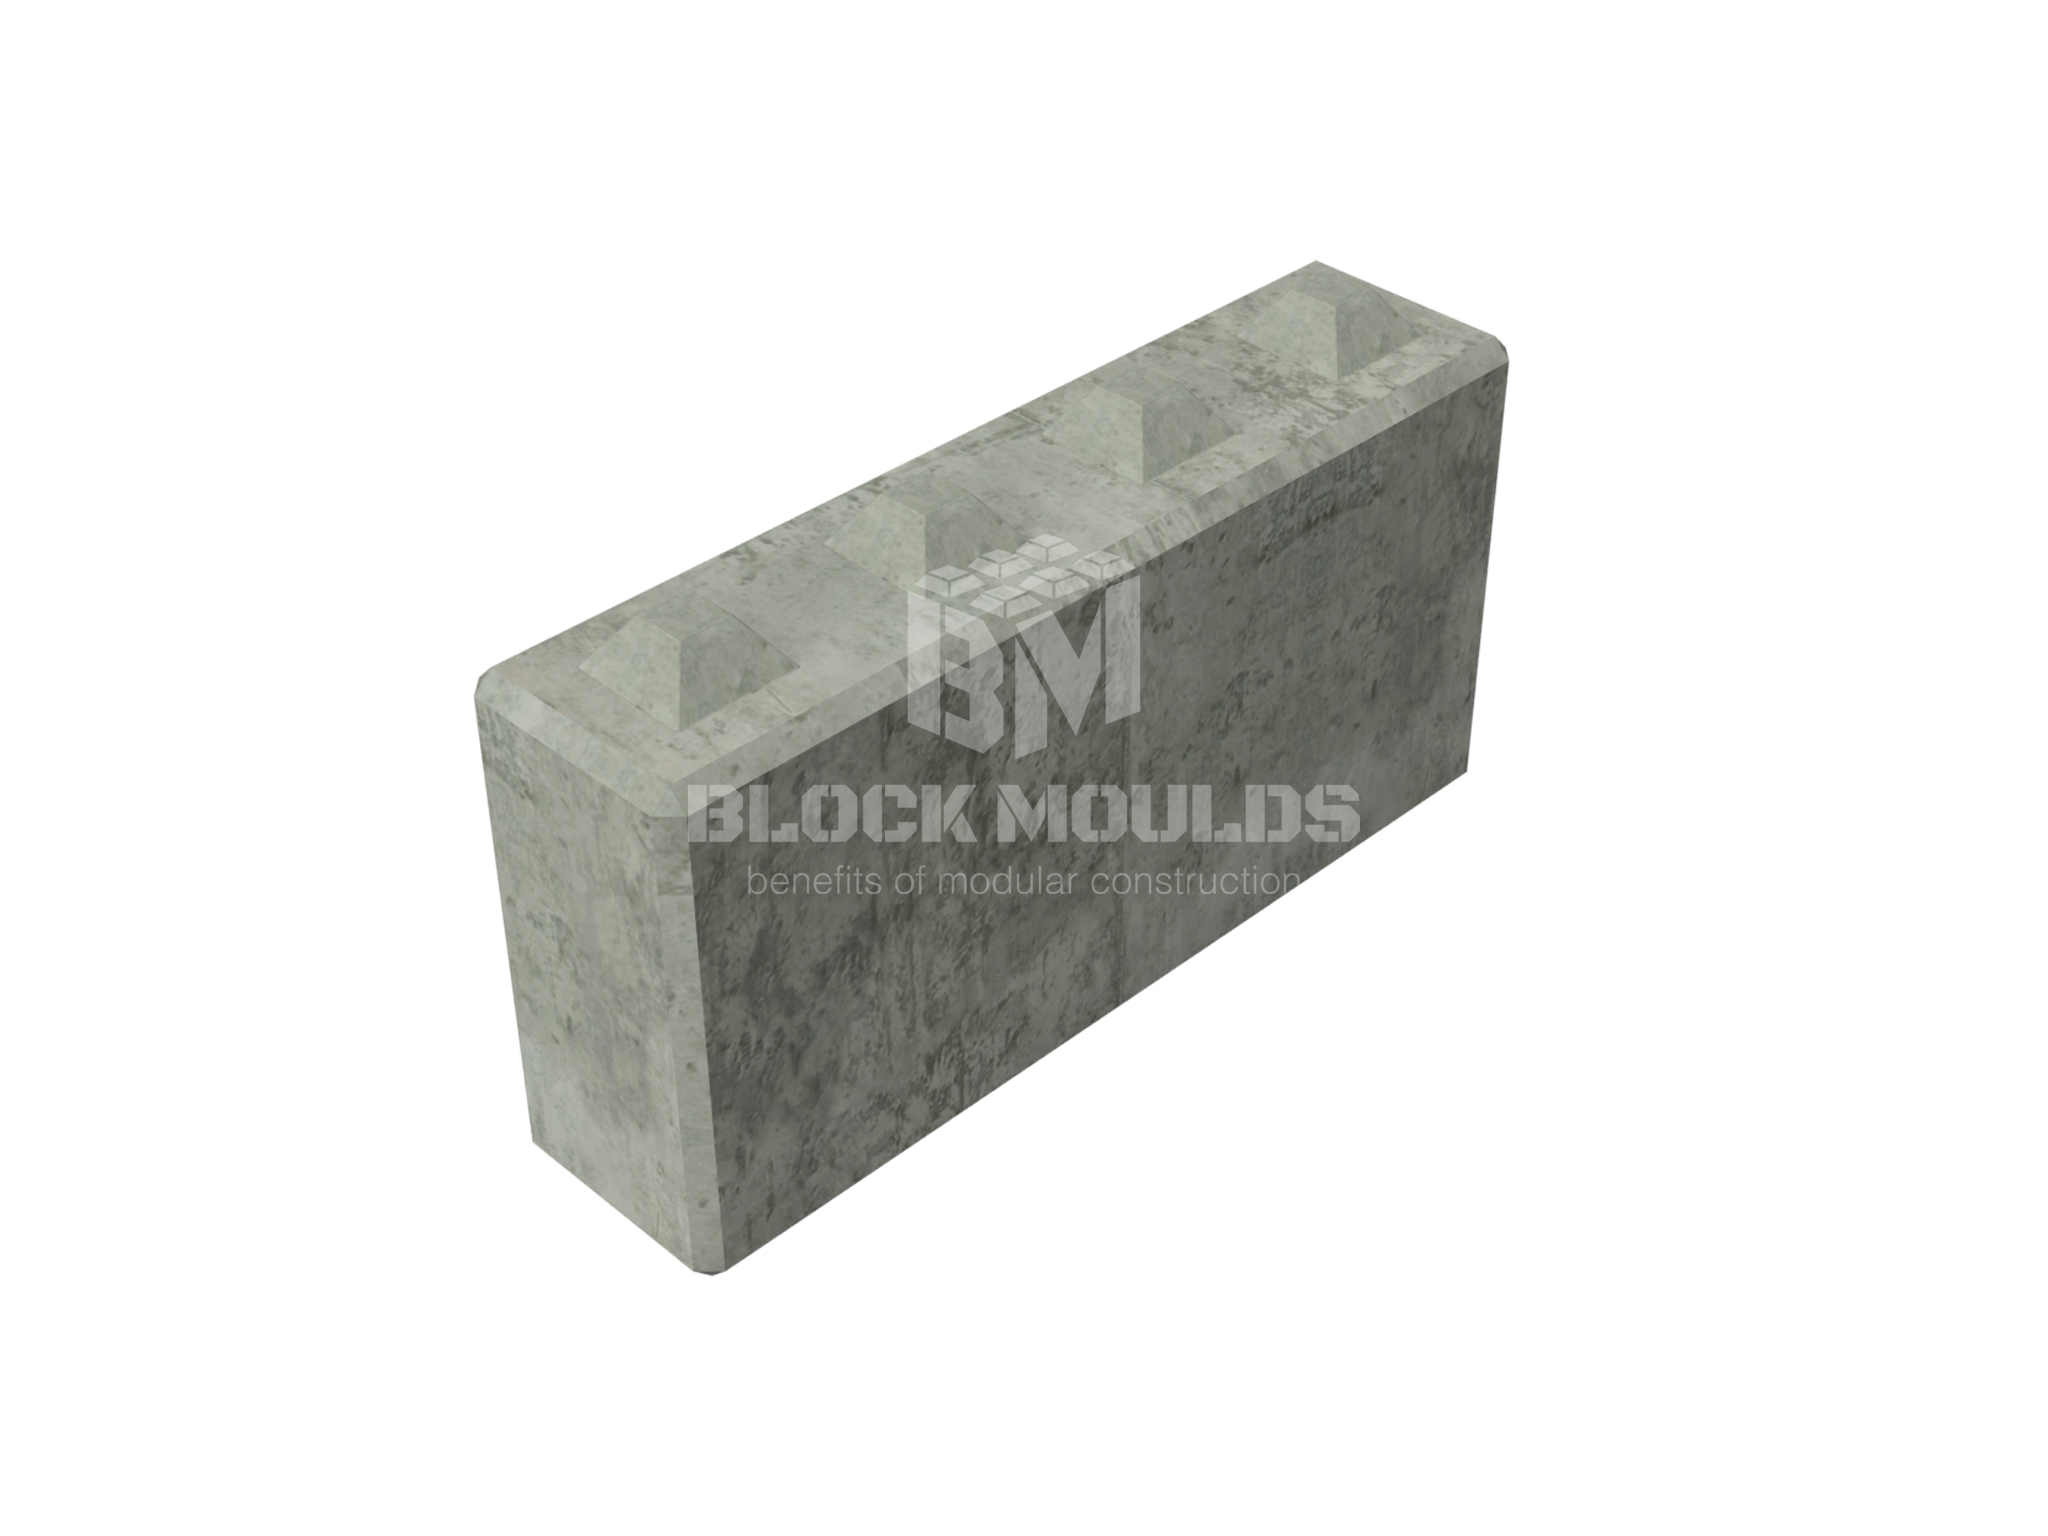 concrete interlocking lego block 120-30-60